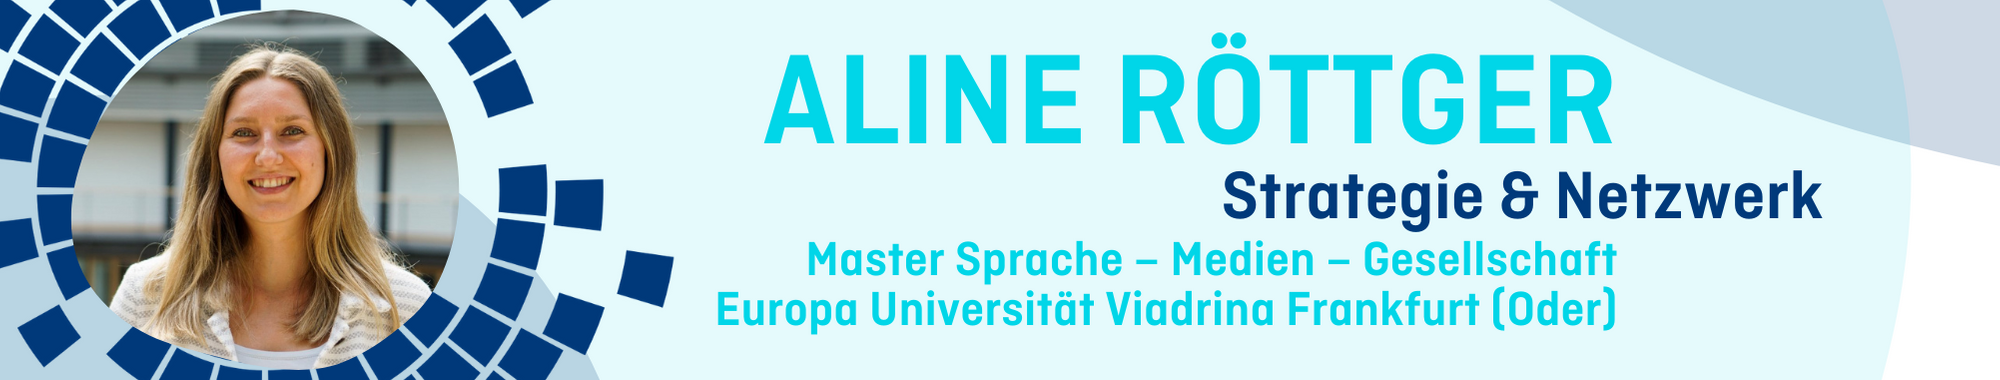 Portrait von Aline Röttger aus dem Team Strategie & Netzwerk, die im Master Sprache-Medien-Gesellschaft an der Europa Universität Viadrina studiert